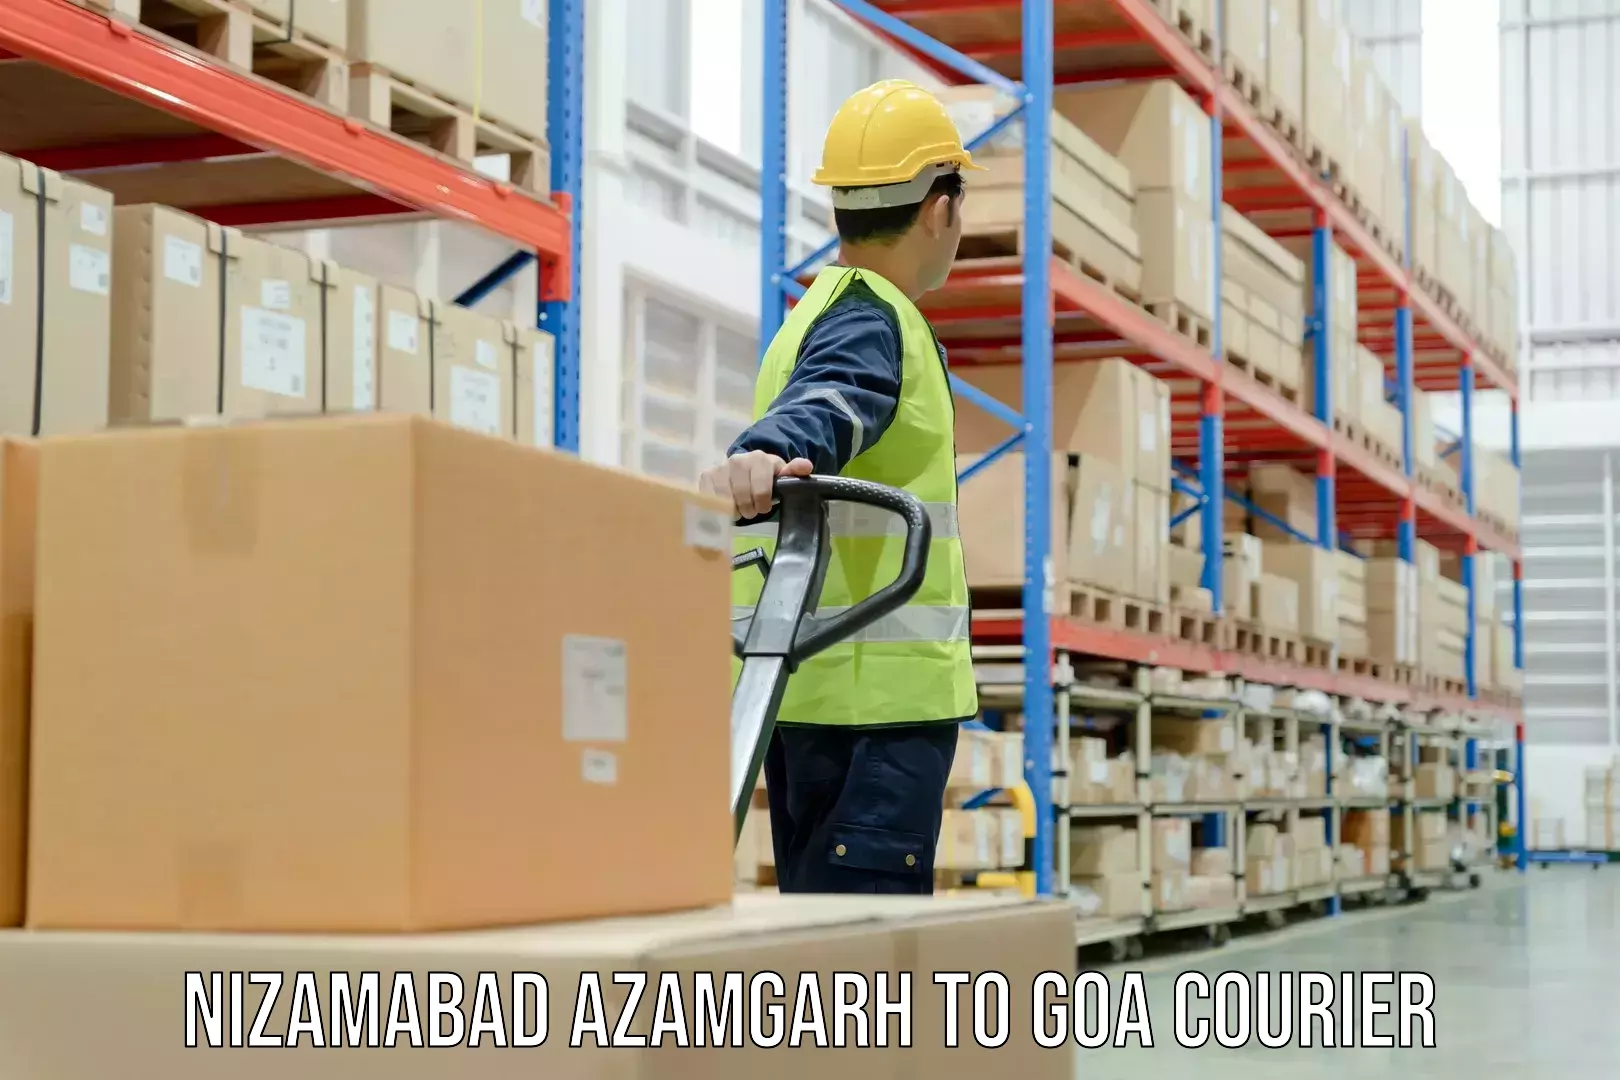 Cargo delivery service Nizamabad Azamgarh to Goa